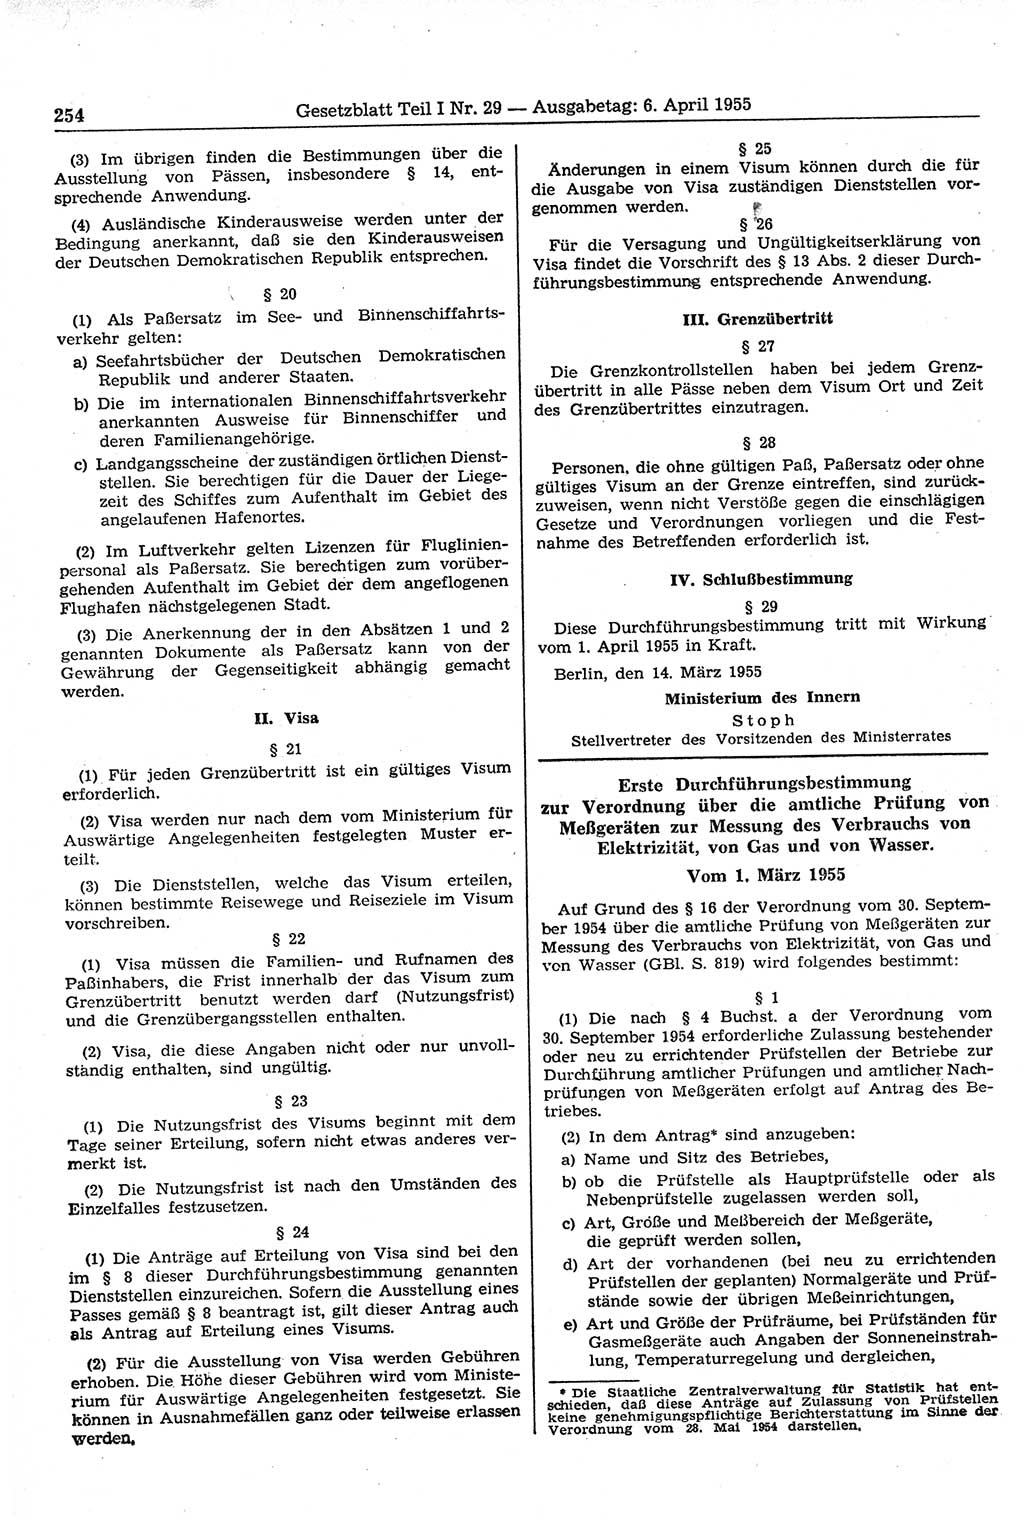 Gesetzblatt (GBl.) der Deutschen Demokratischen Republik (DDR) Teil Ⅰ 1955, Seite 254 (GBl. DDR Ⅰ 1955, S. 254)